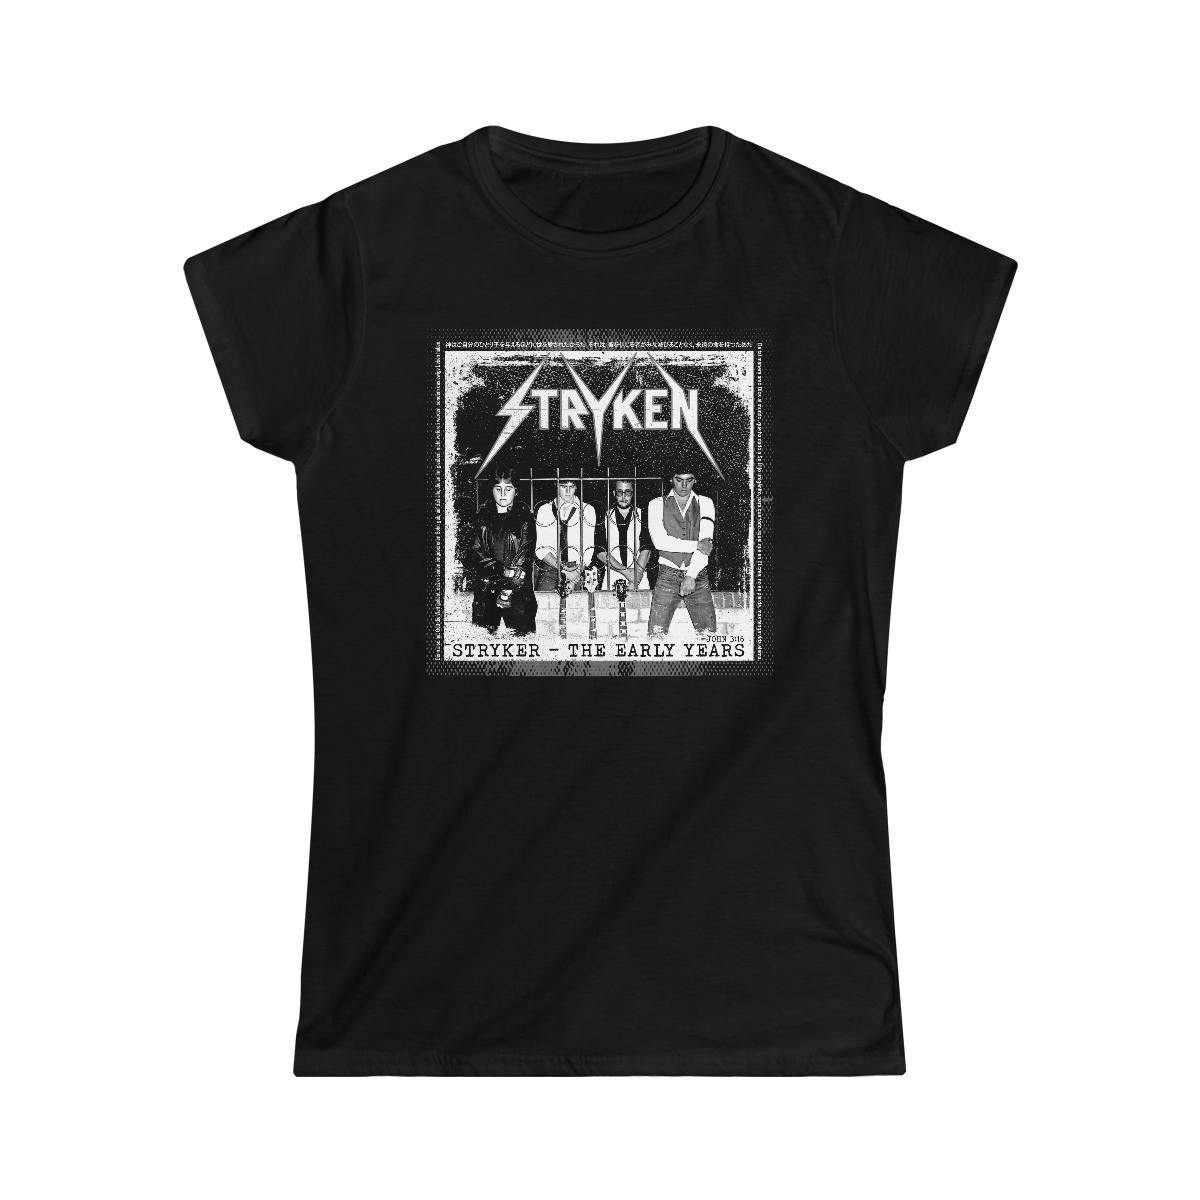 Stryken – Stryker-The Early Years Women’s Short Sleeve Tshirt